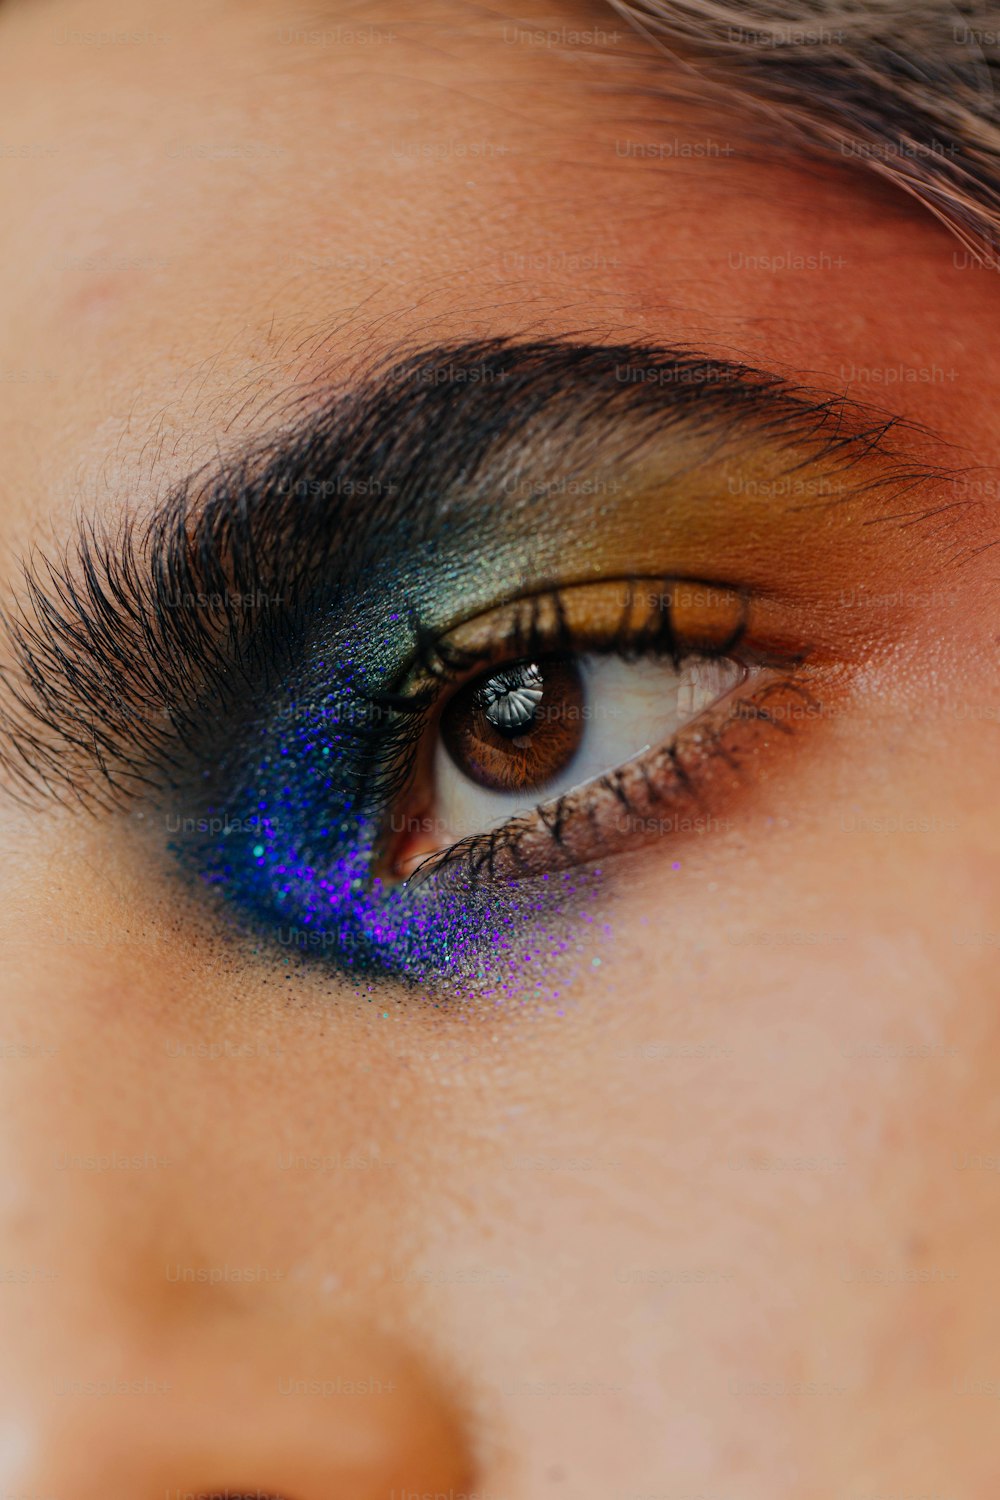 eine Nahaufnahme des Auges einer Person mit einem blauen und gelben Lidschatten